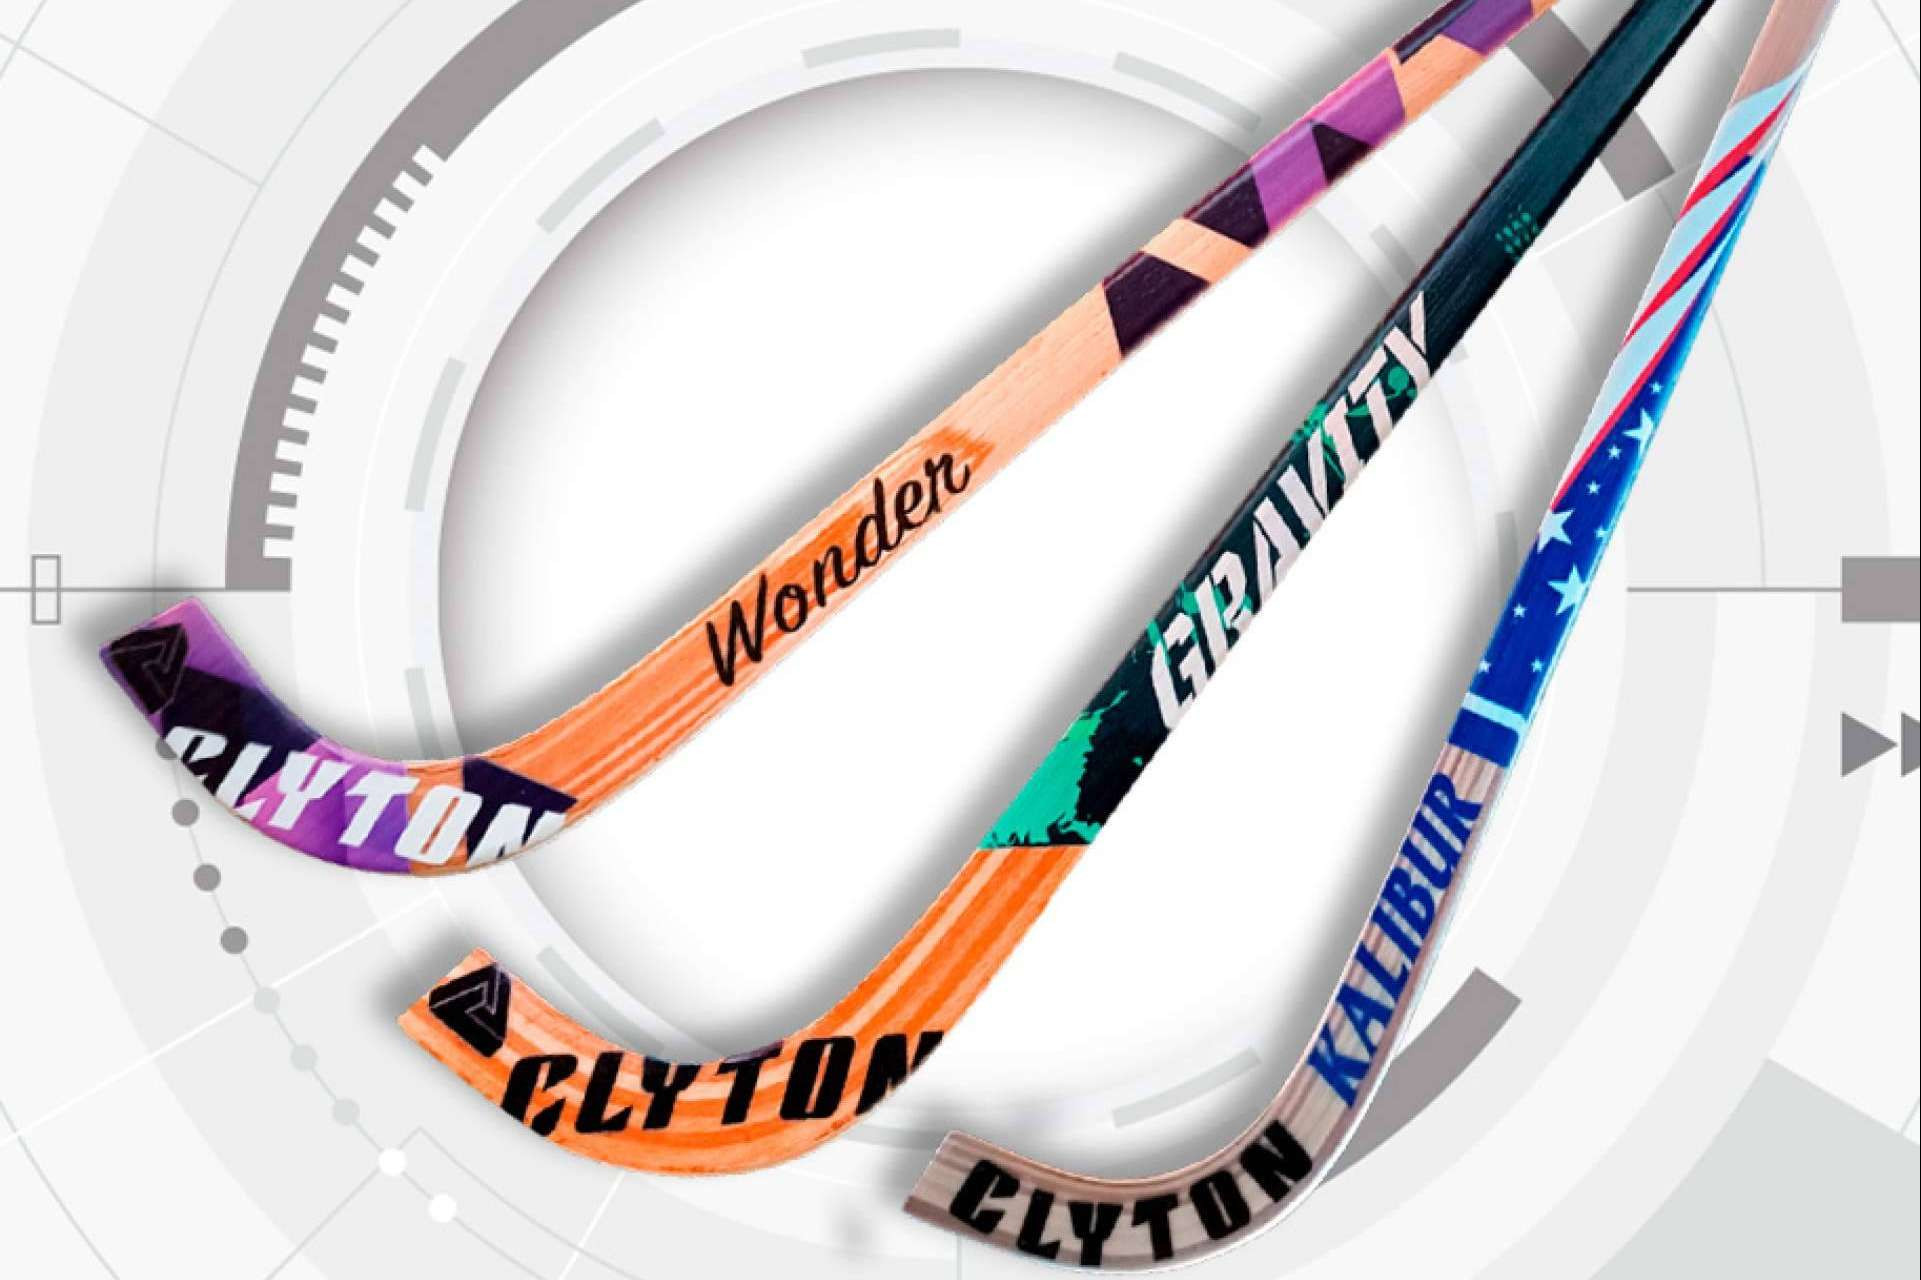  Los nuevos sticks de la marca Clyton disponibles en Hoquei360 